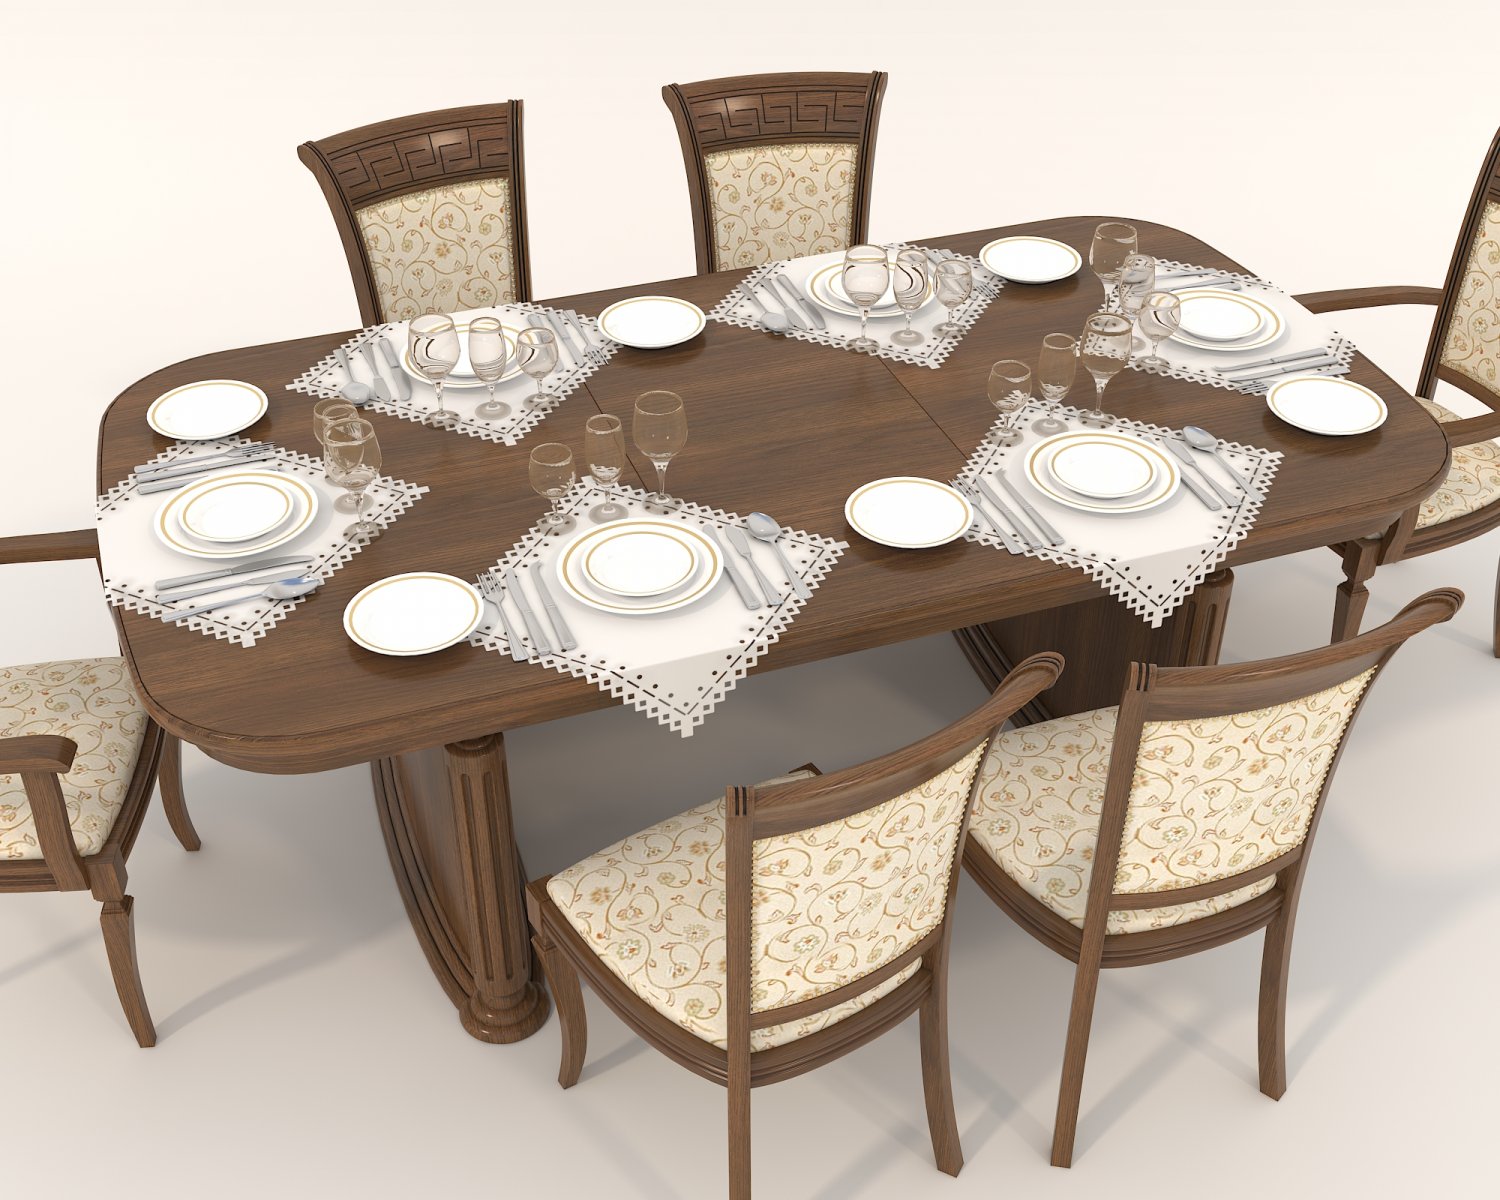 restaurant silverware set 3D Model in Table 3DExport